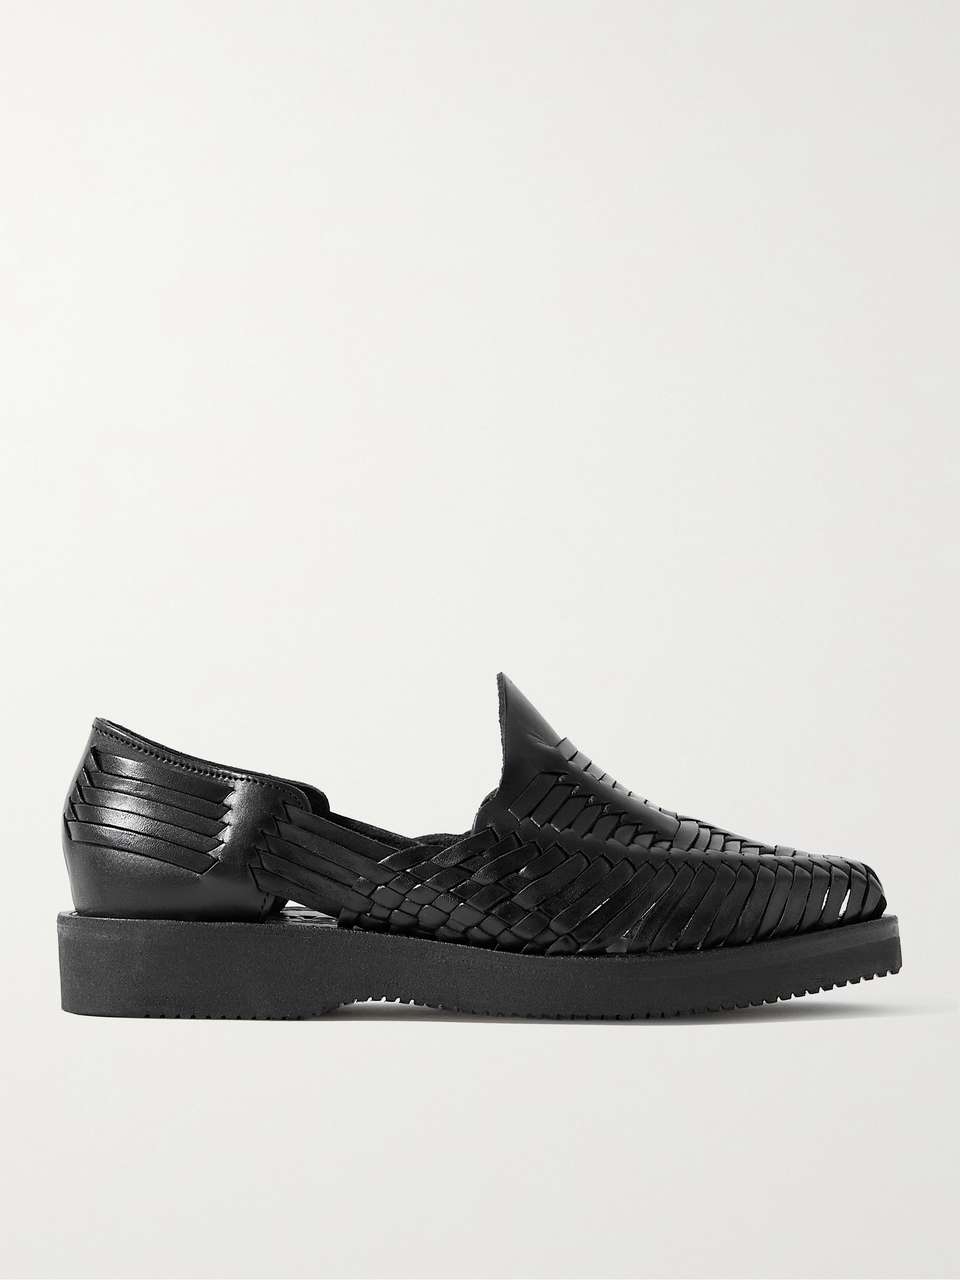 YUKETEN Alejandro Woven Leather Huarache Sandals for Men | MR PORTER